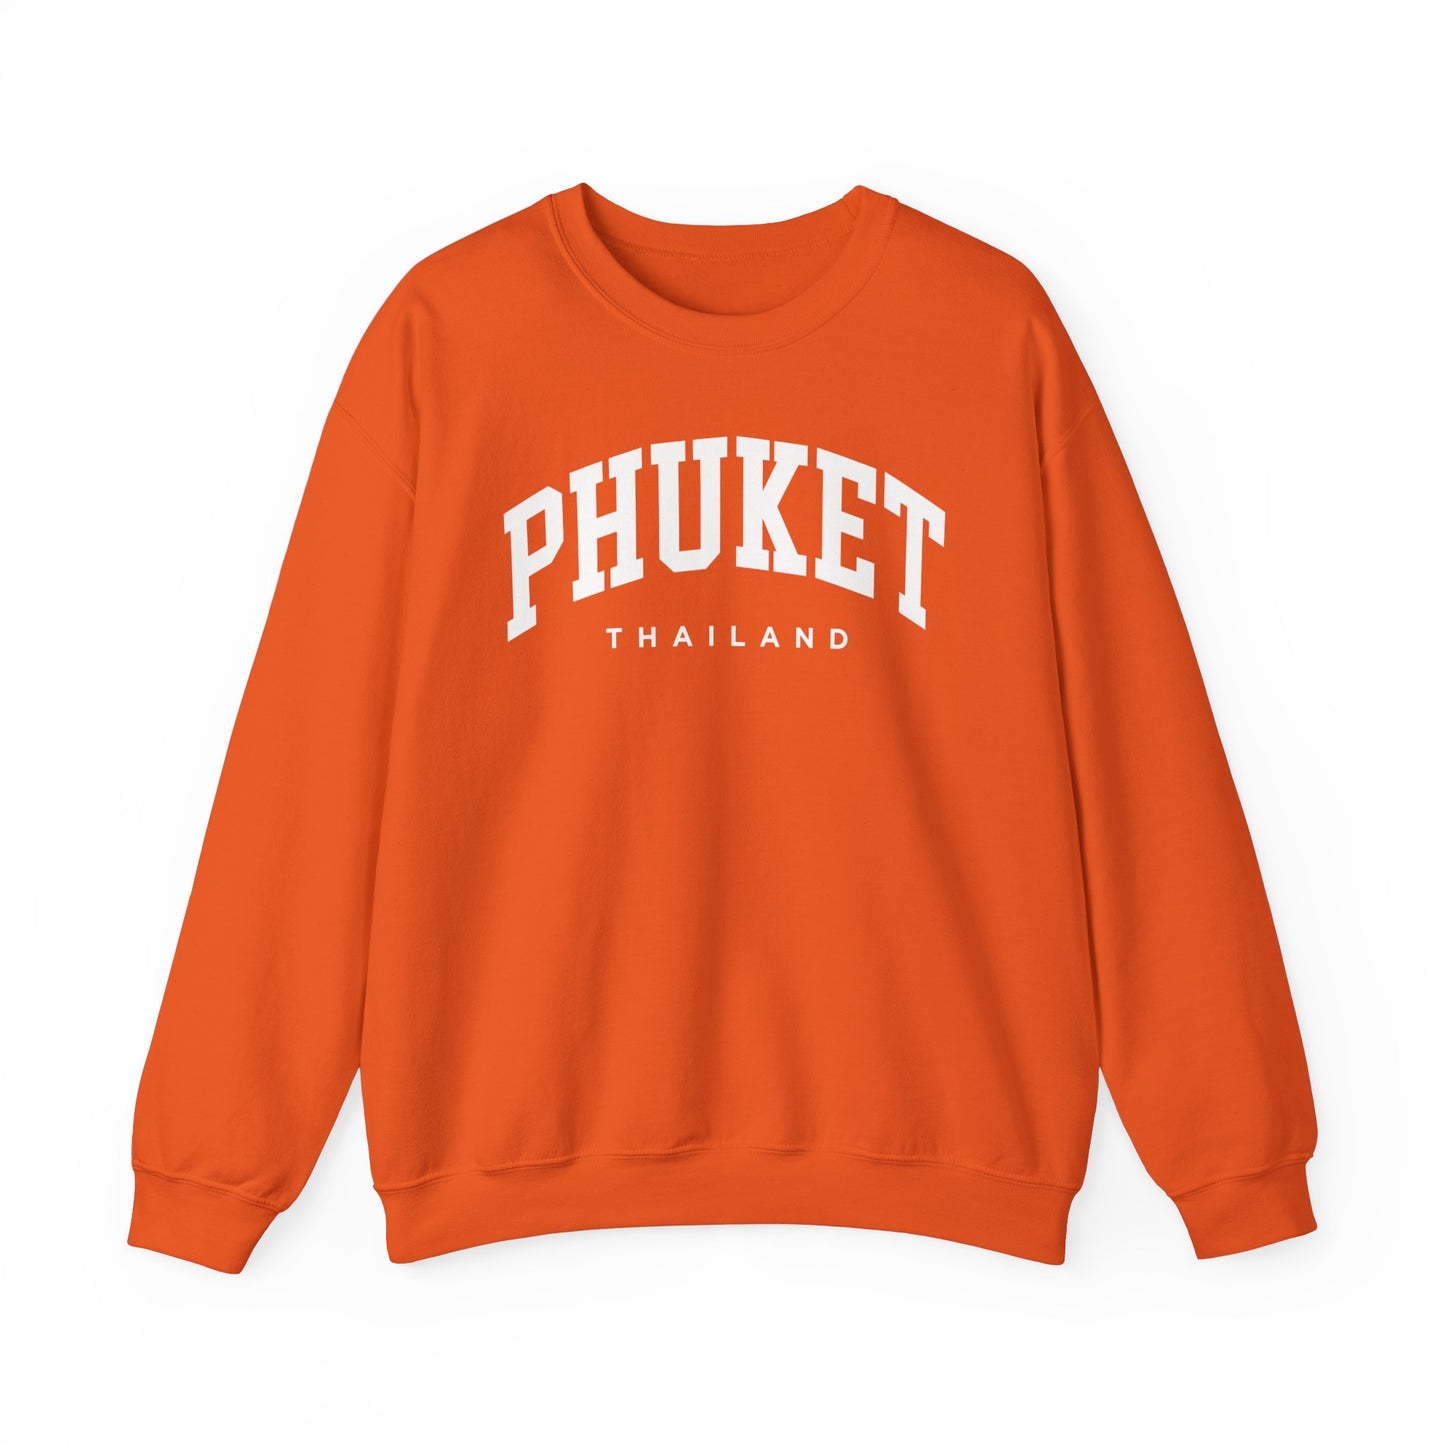 Phuket Thailand Sweatshirt